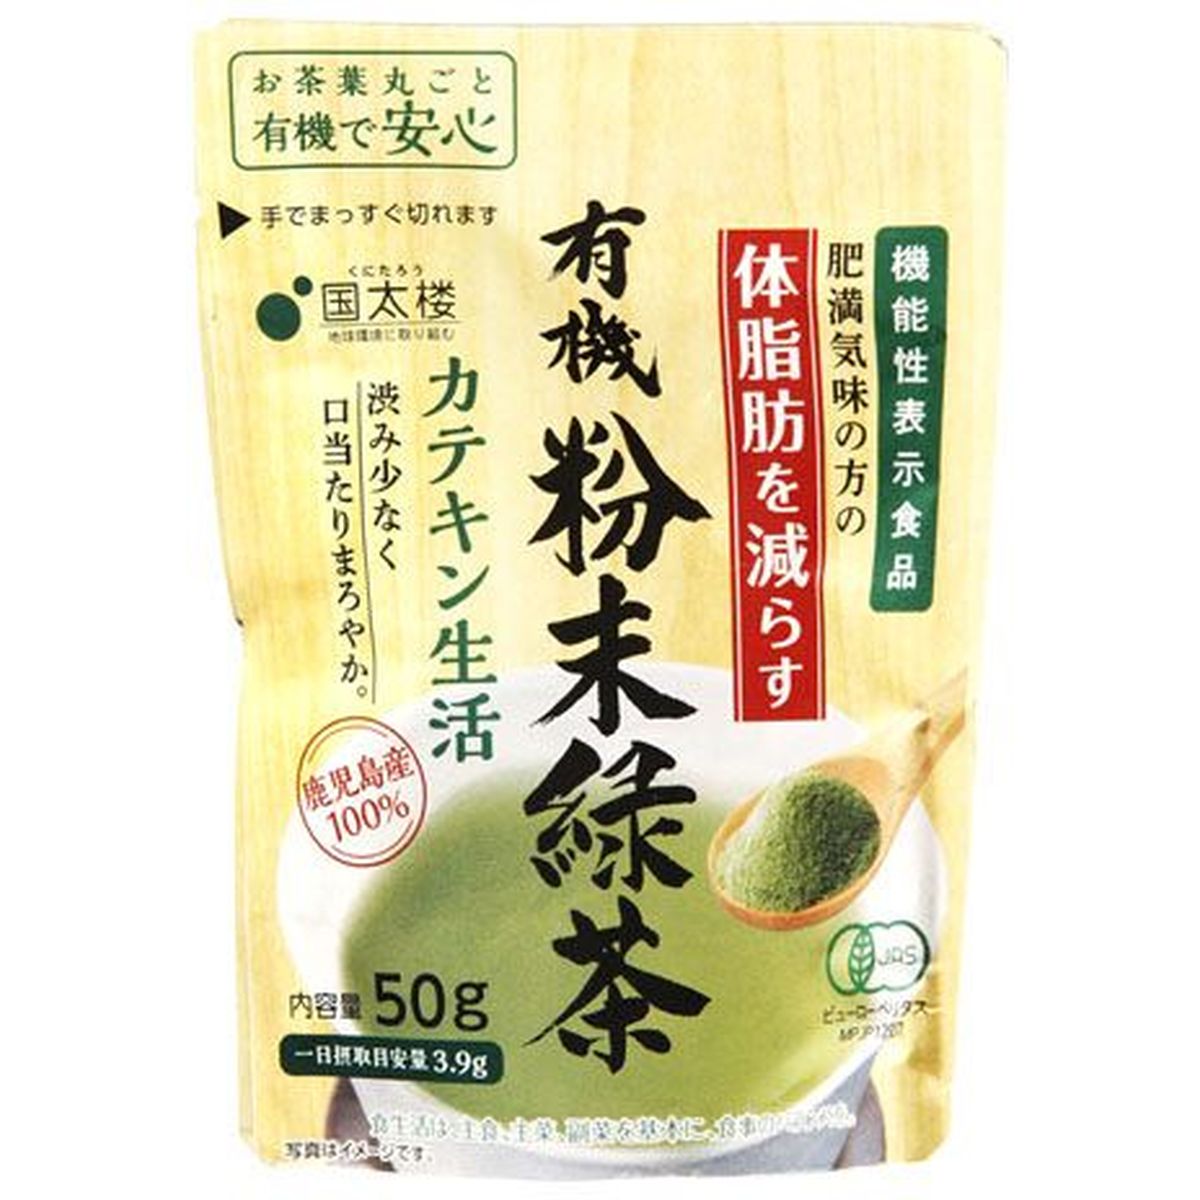 【6個入リ】国太楼 有機粉末緑茶 カテキン生活 50g